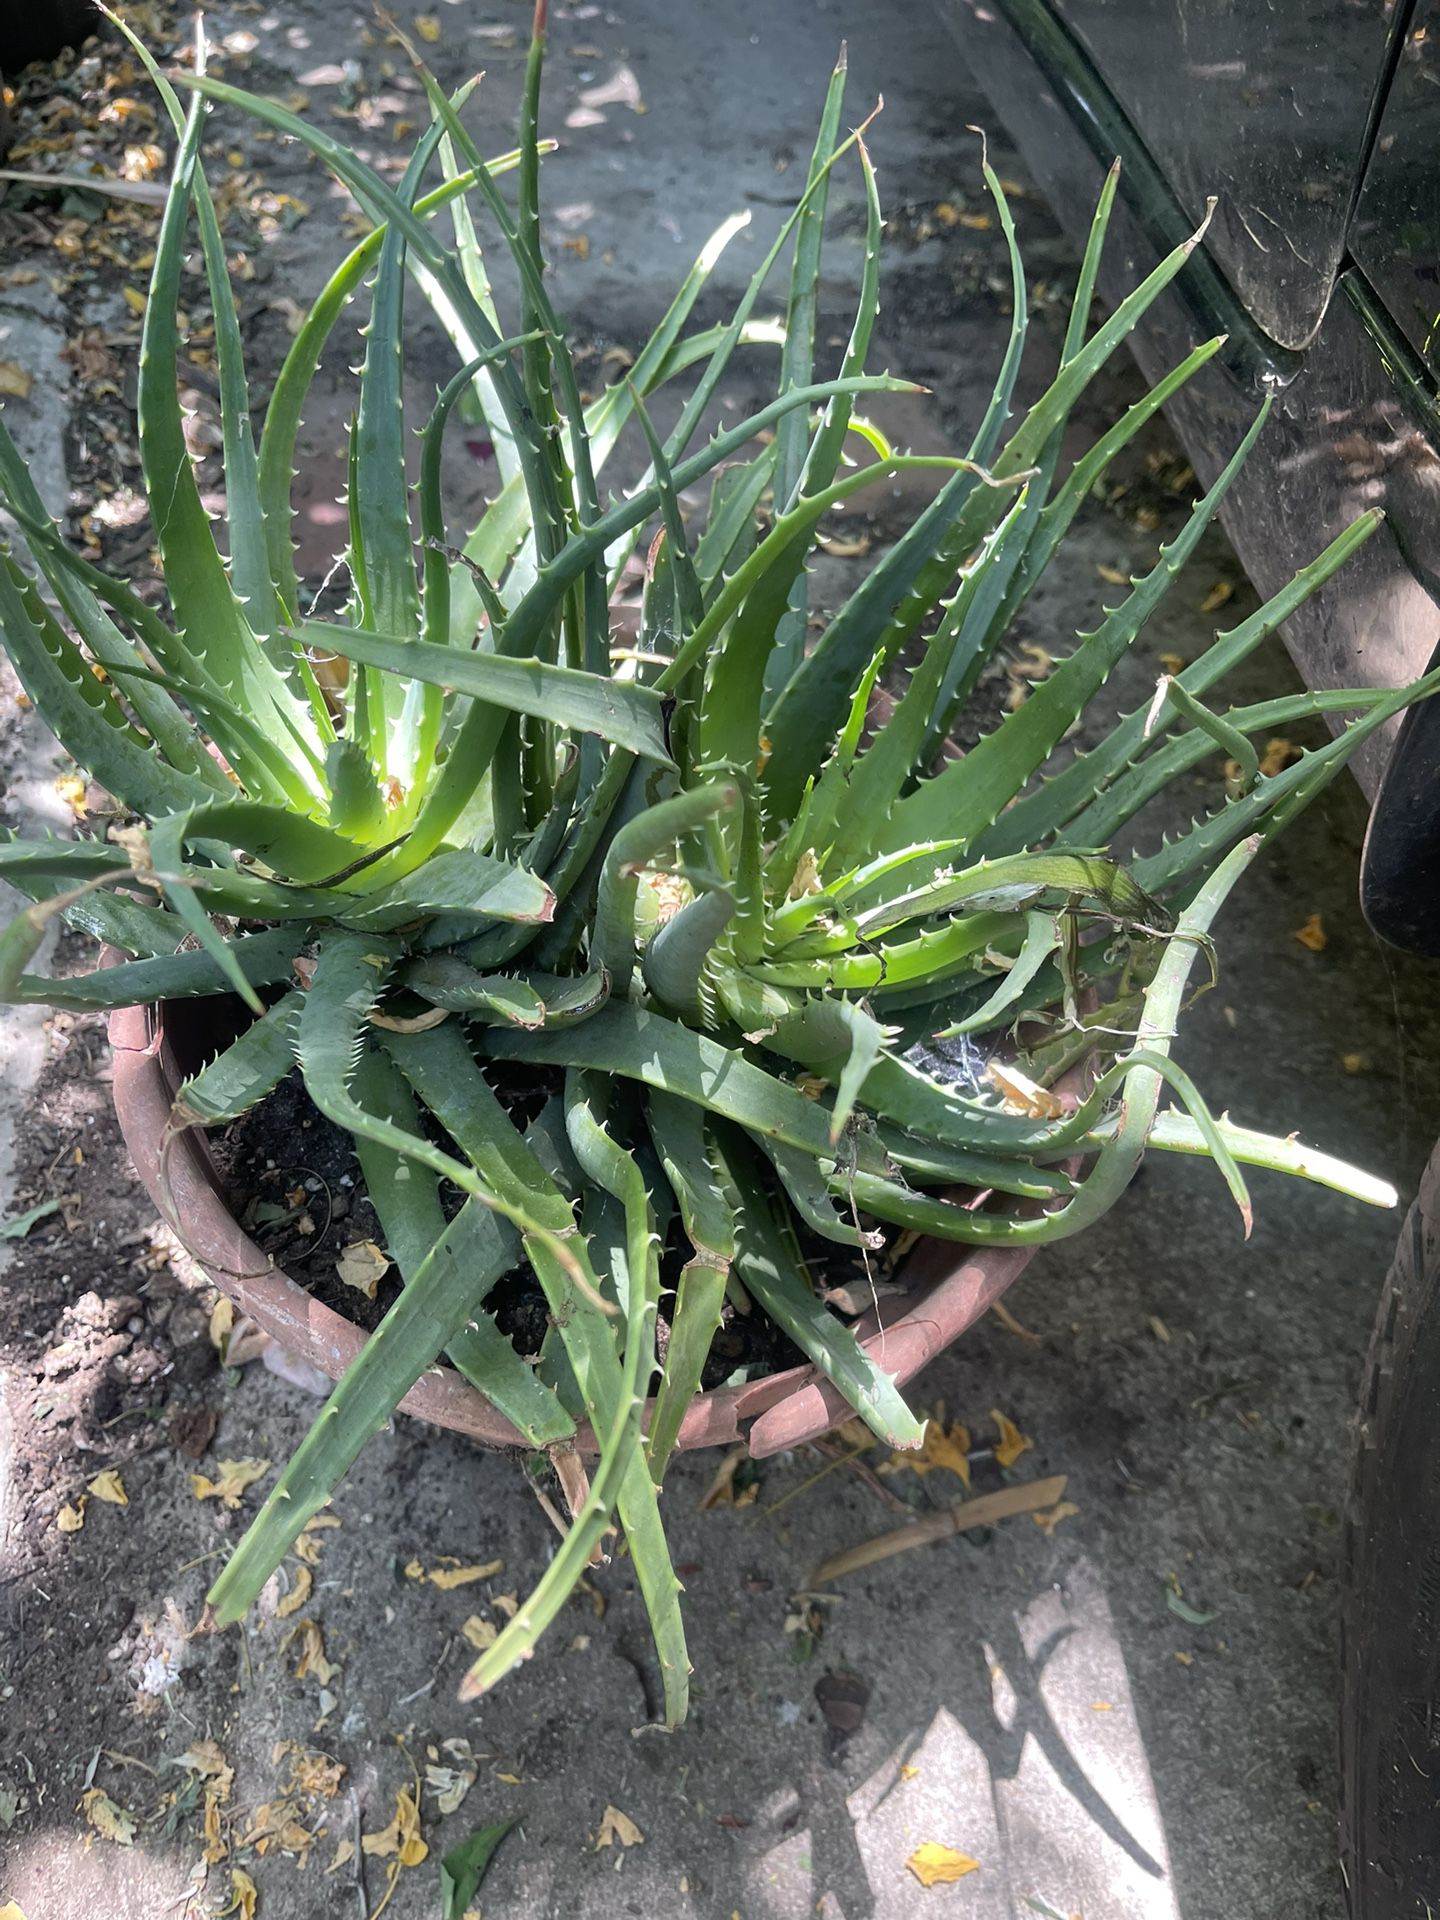 Aloe Vera Plant For Garden $8